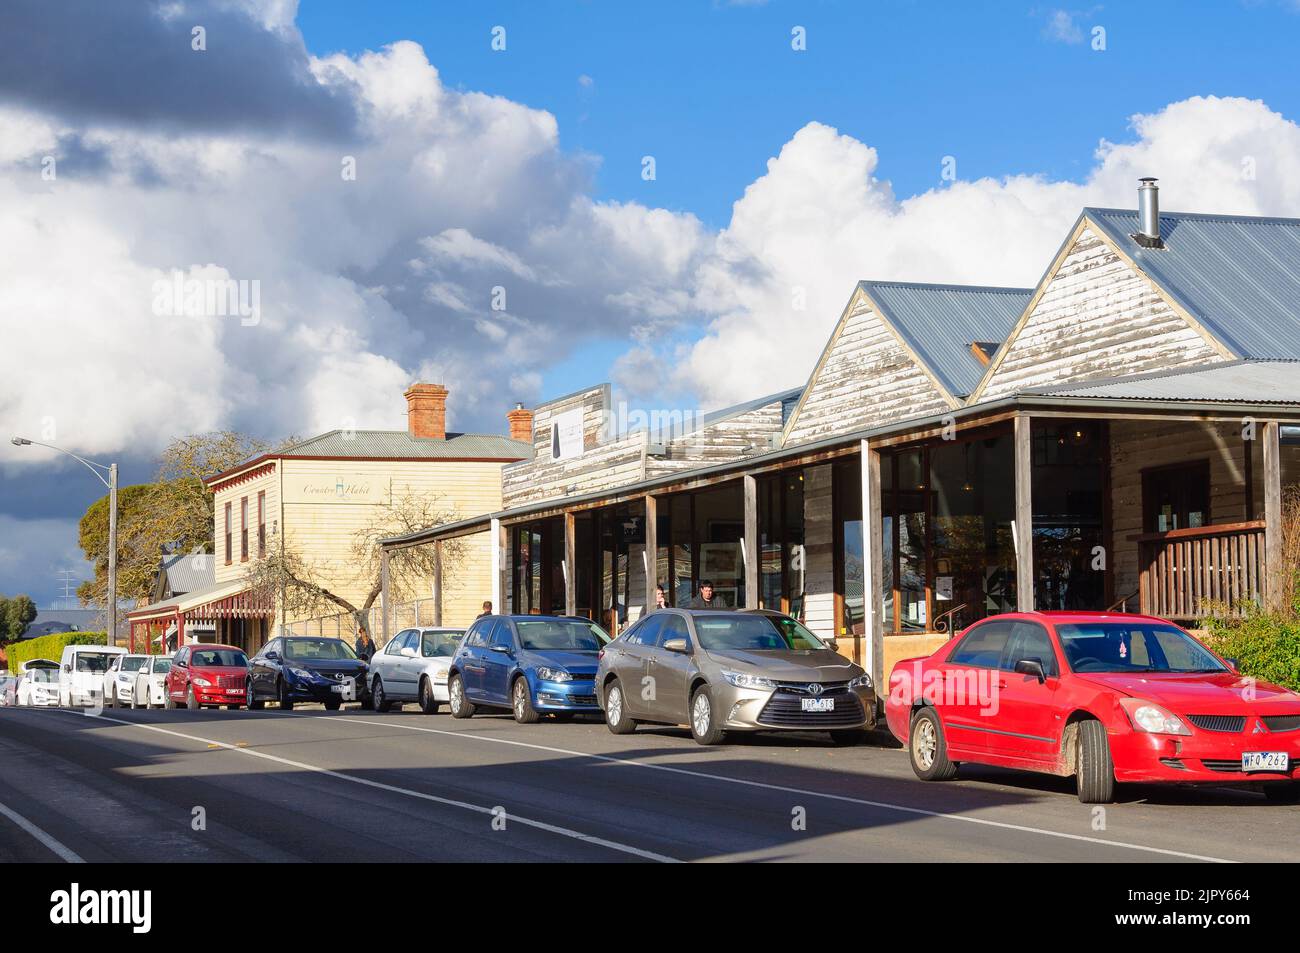 Piper Street is a vibrant retail street - Kyneton, Victoria, Australia Stock Photo